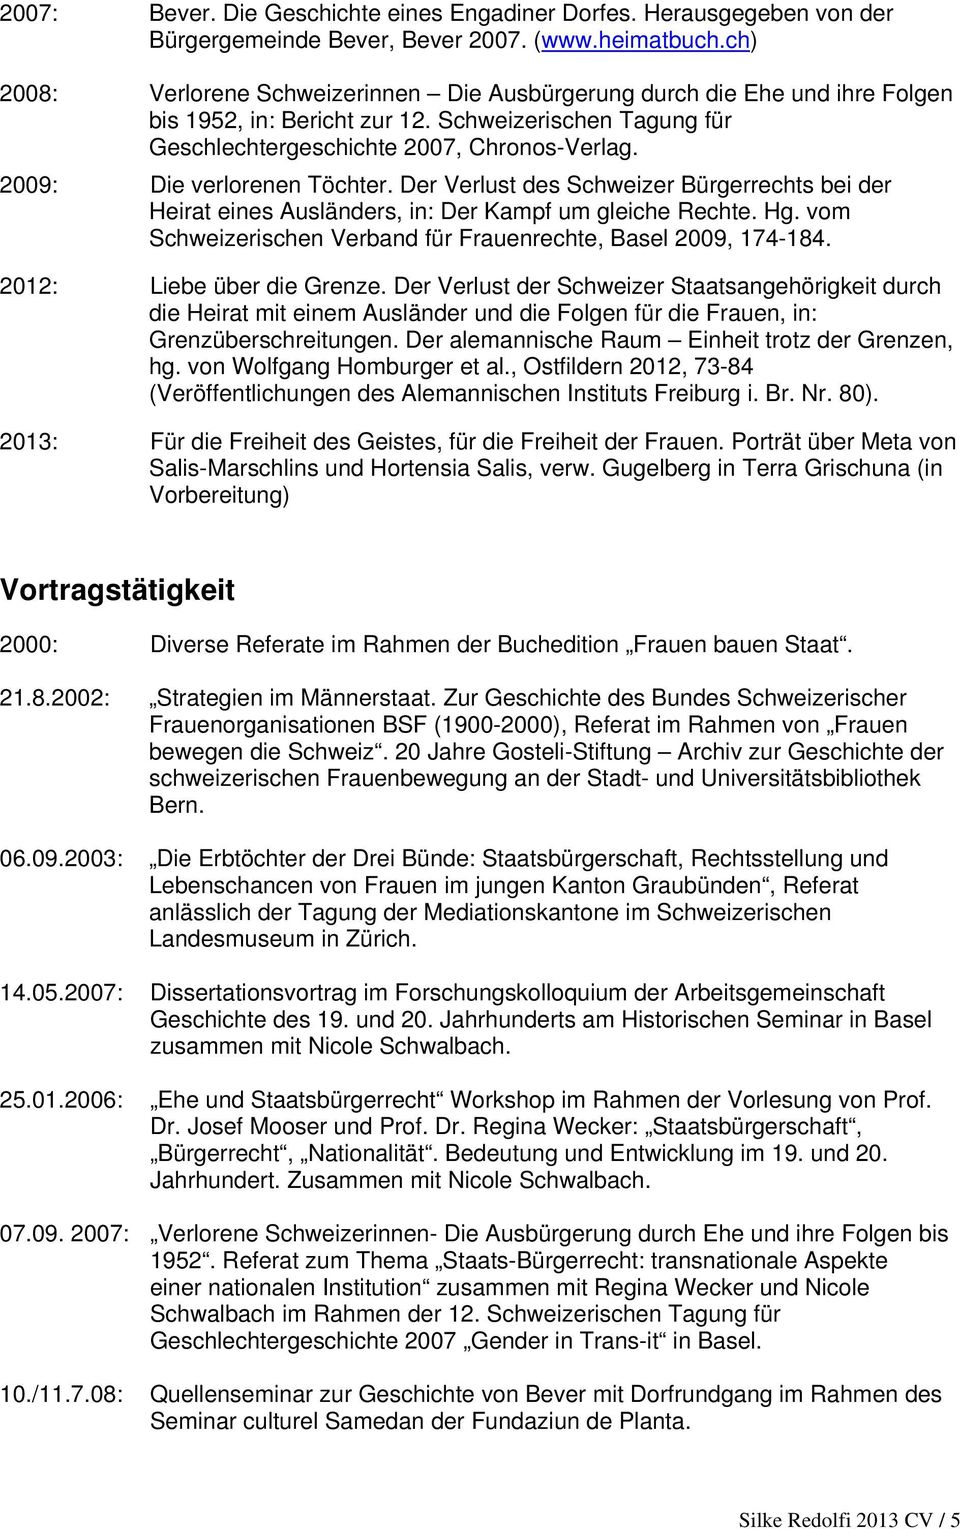 2009: Die verlorenen Töchter. Der Verlust des Schweizer Bürgerrechts bei der Heirat eines Ausländers, in: Der Kampf um gleiche Rechte. Hg.